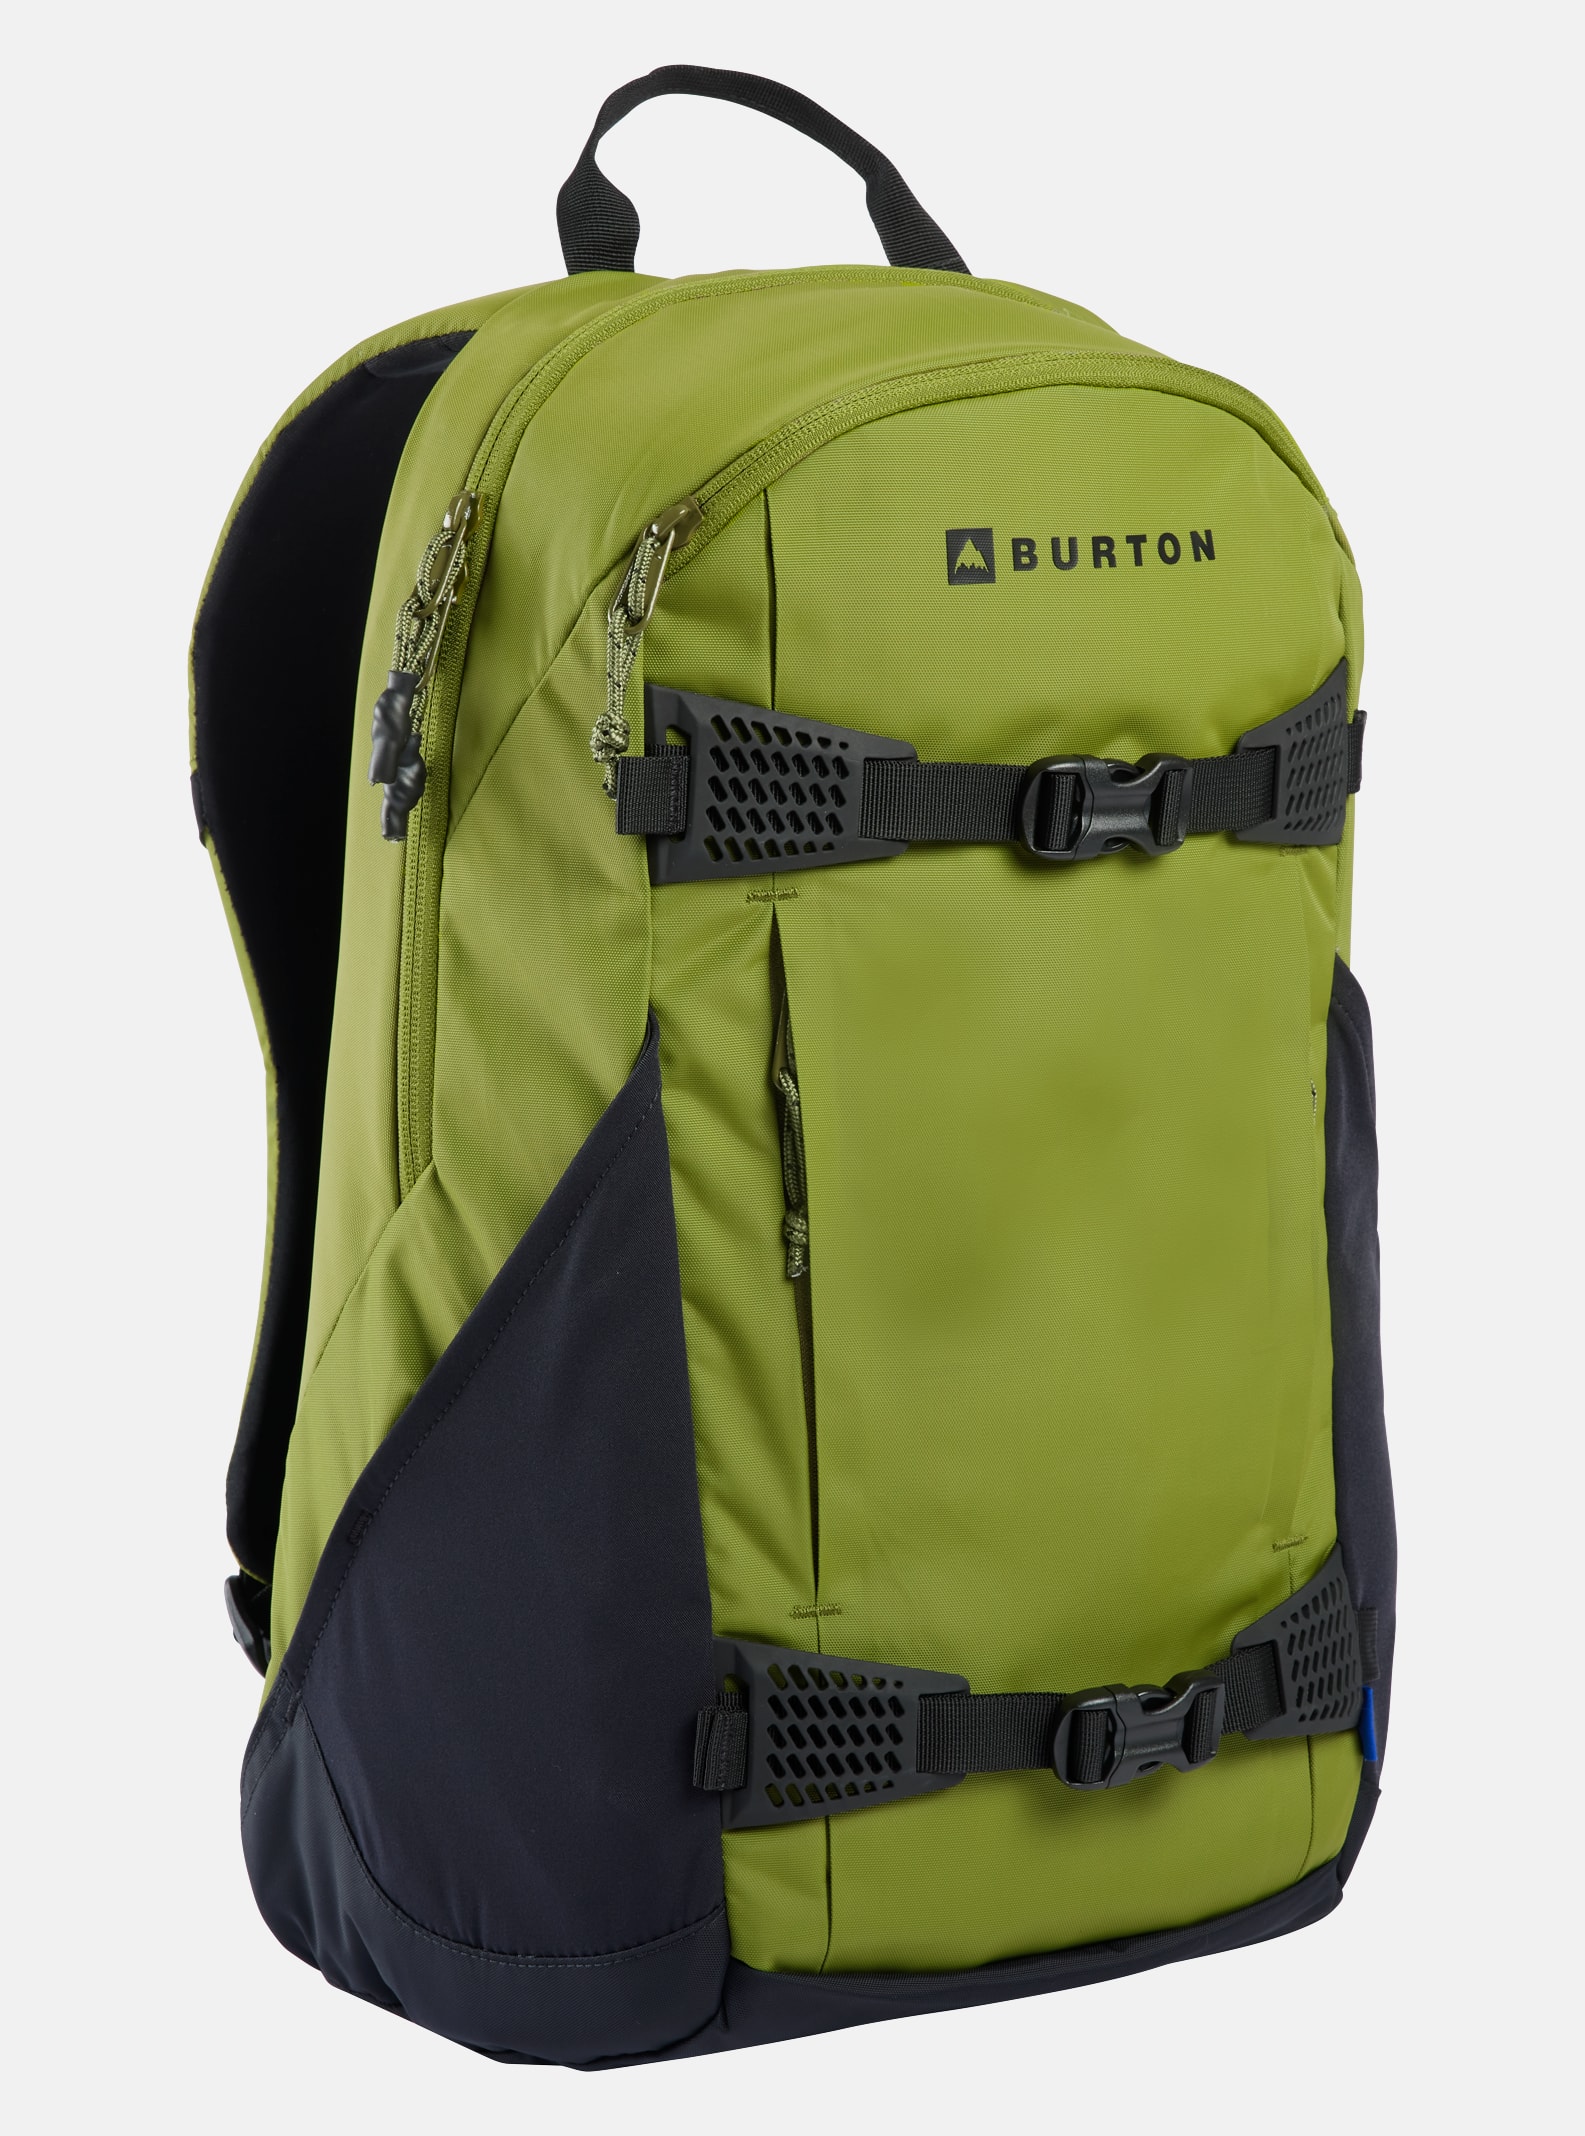 Rucksäcke und Taschen | Burton Snowboards DE